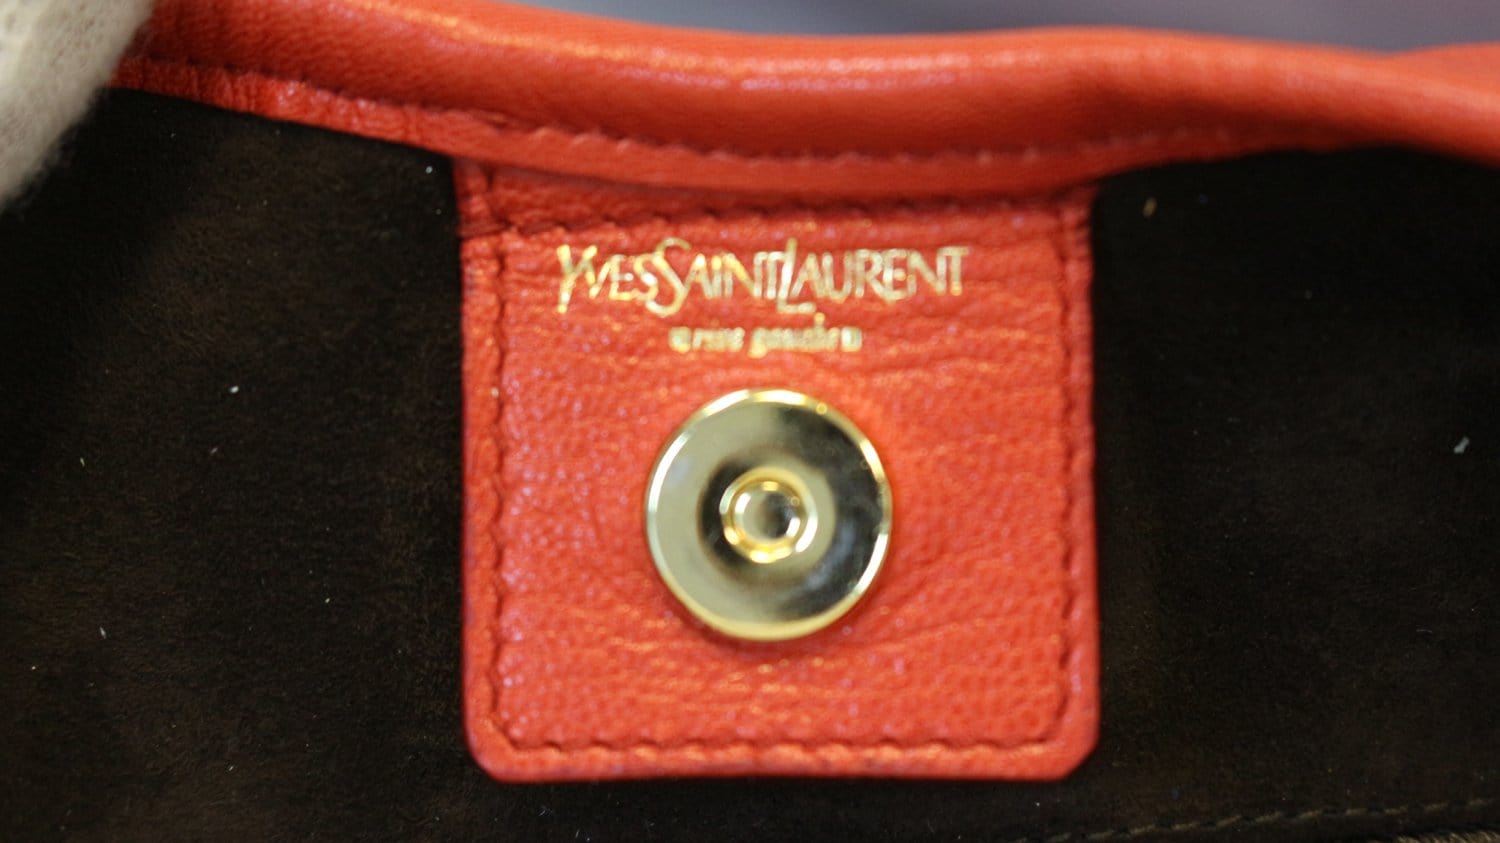 Yves Saint Laurent YSL Brown Leather Saint Tropez Shoulder Bag